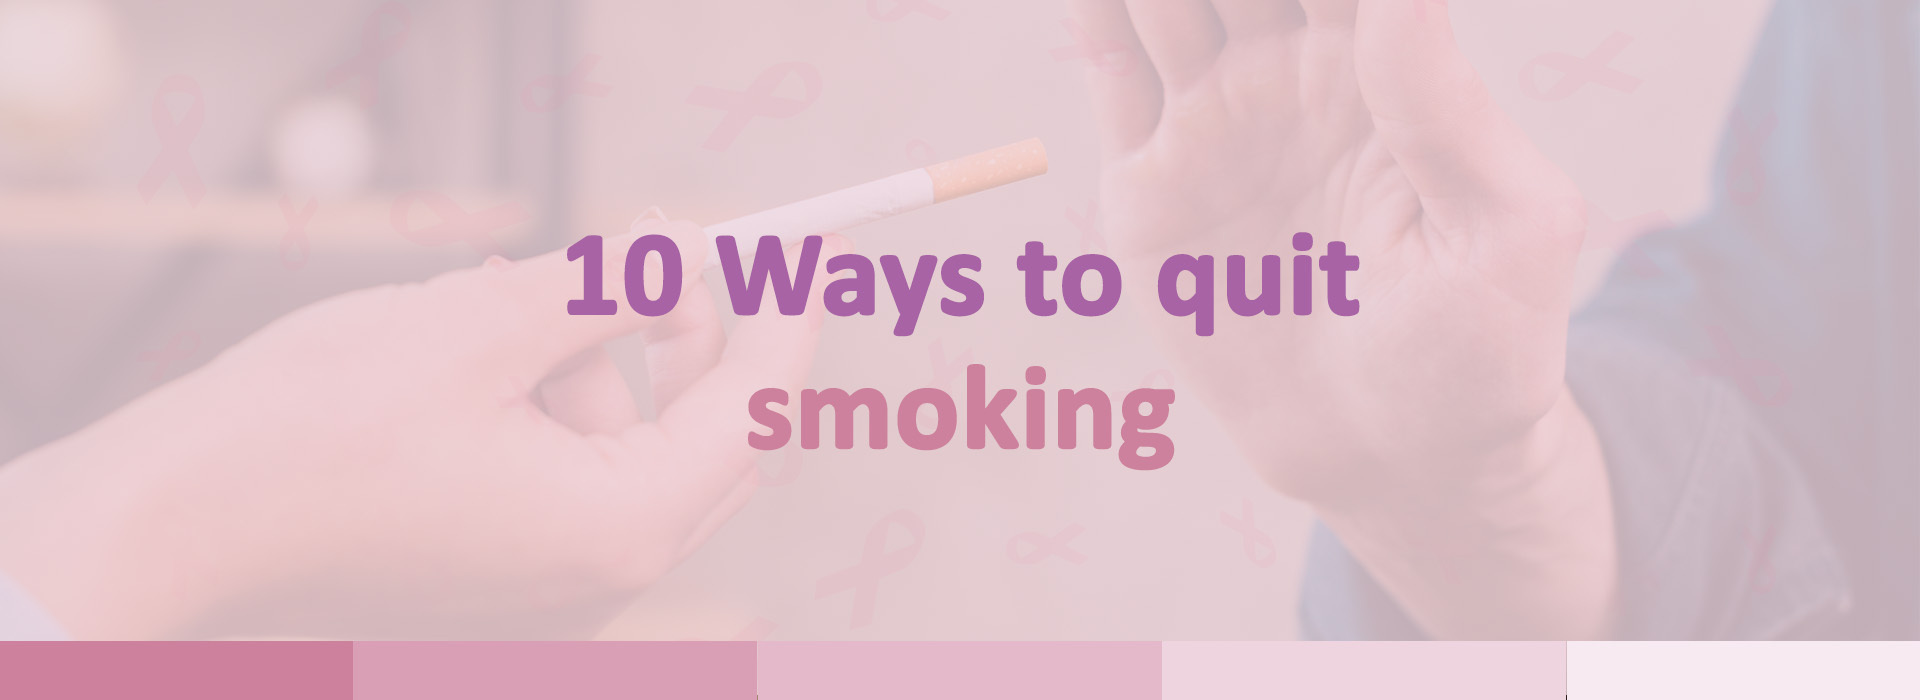 10 Ways to quit smoking